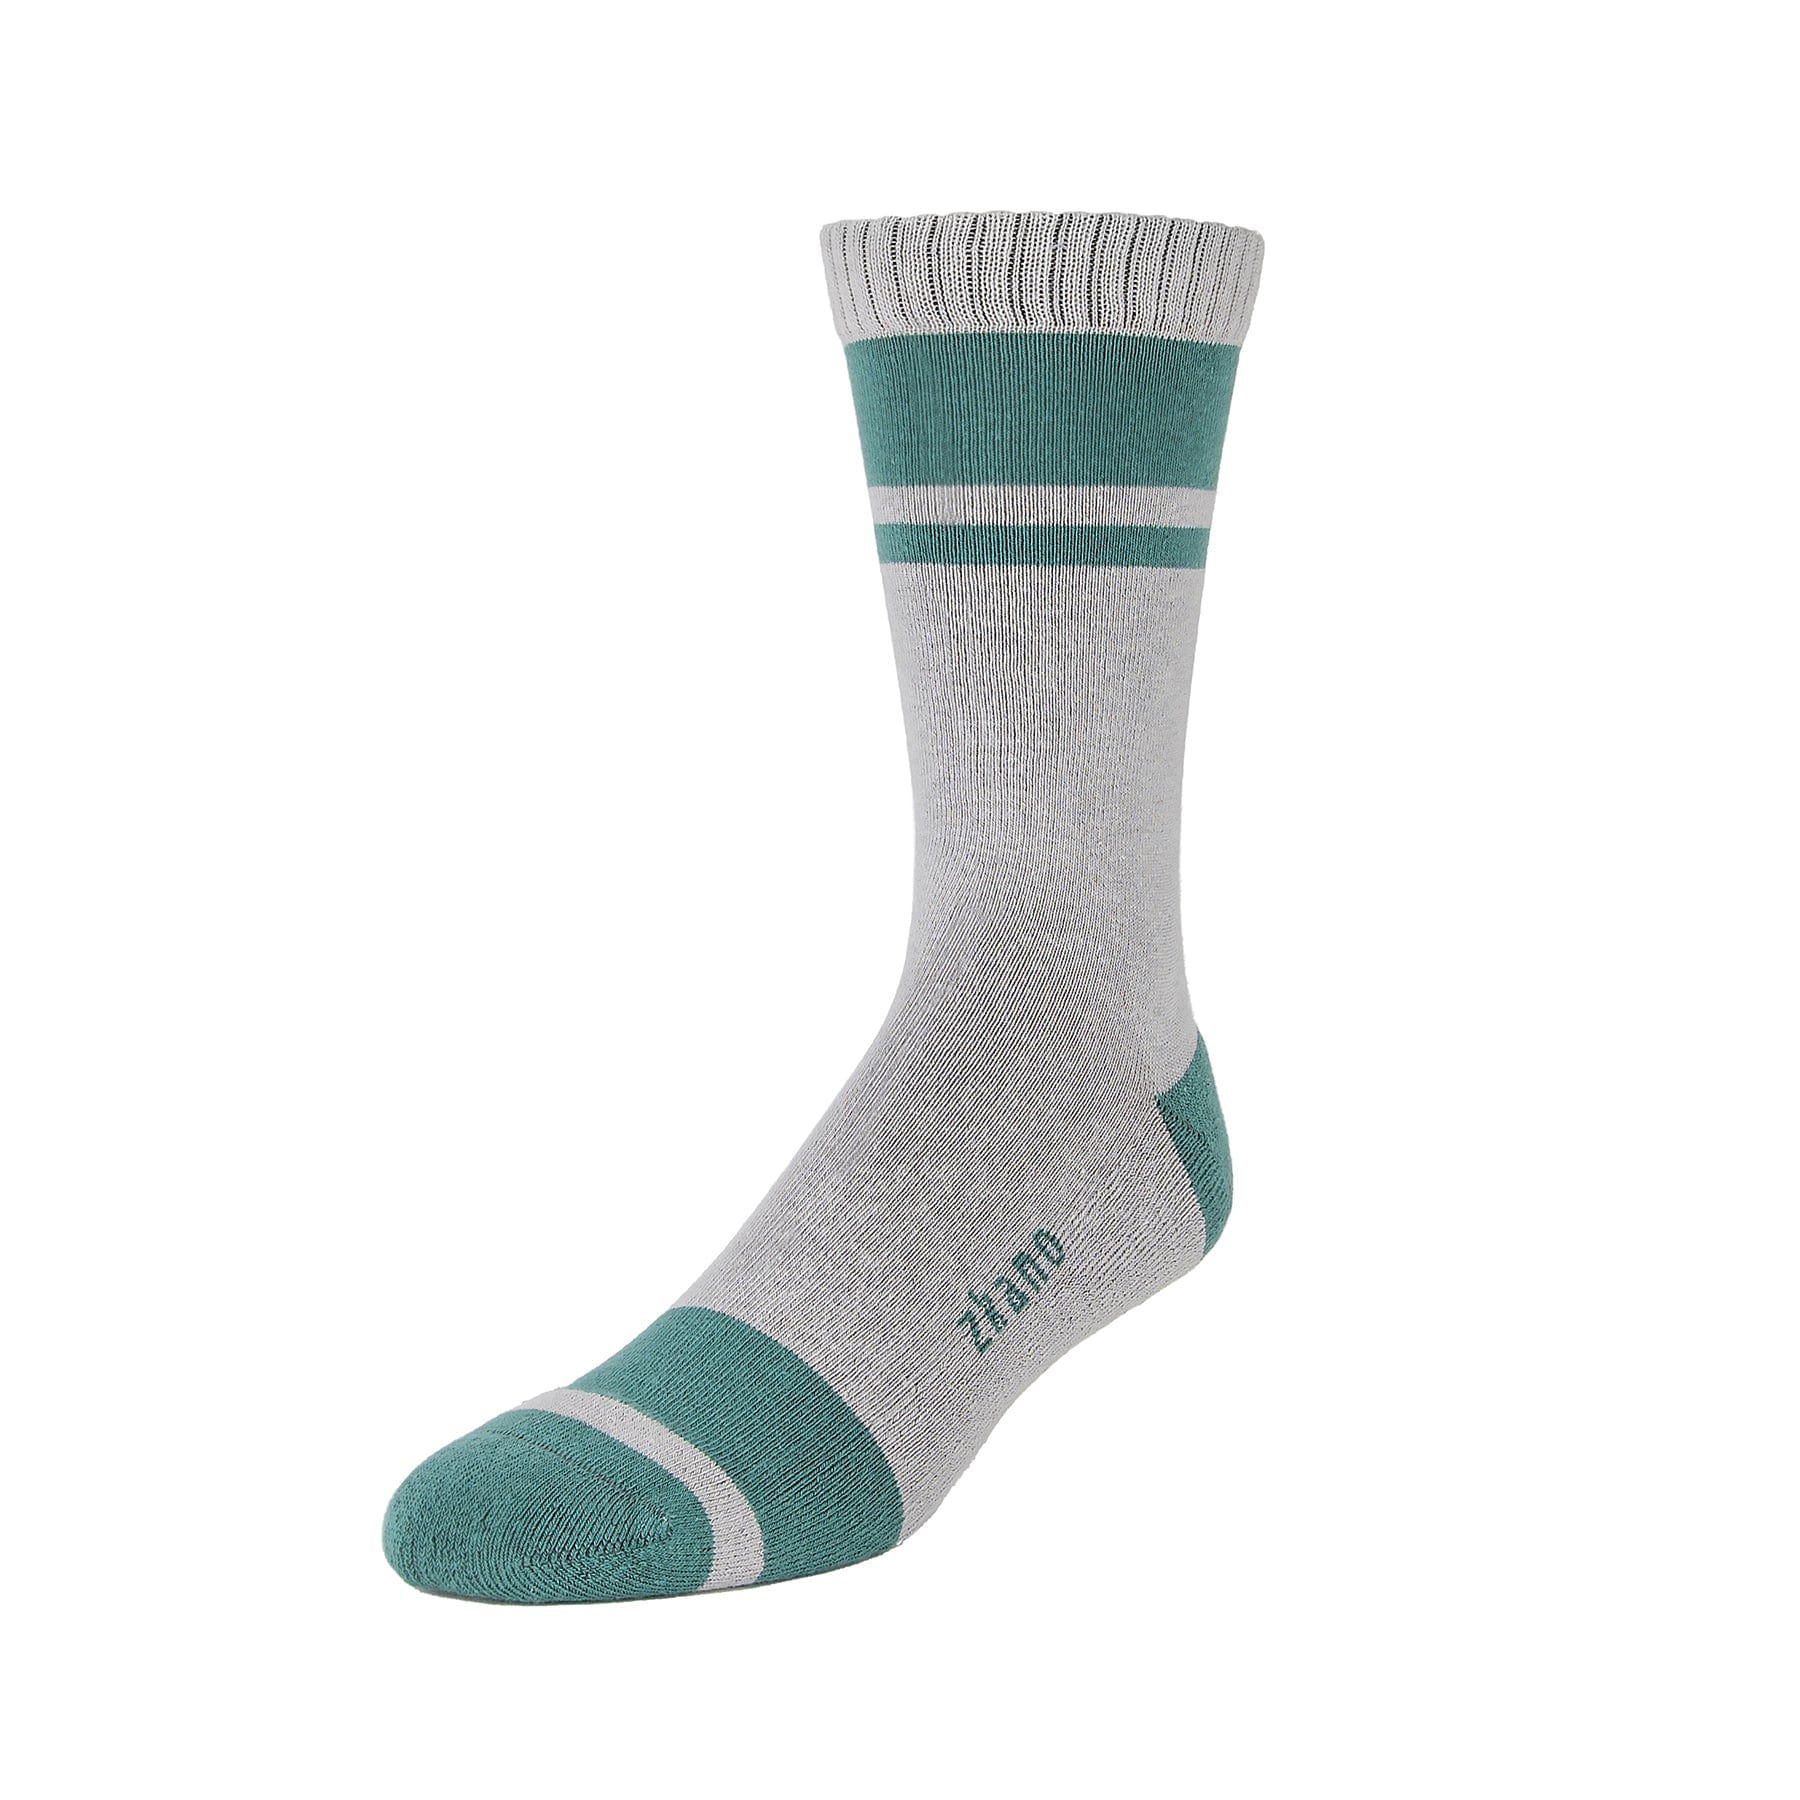 Little River - zkano Cushion Socks – Organic Cotton socks - Crew Fir